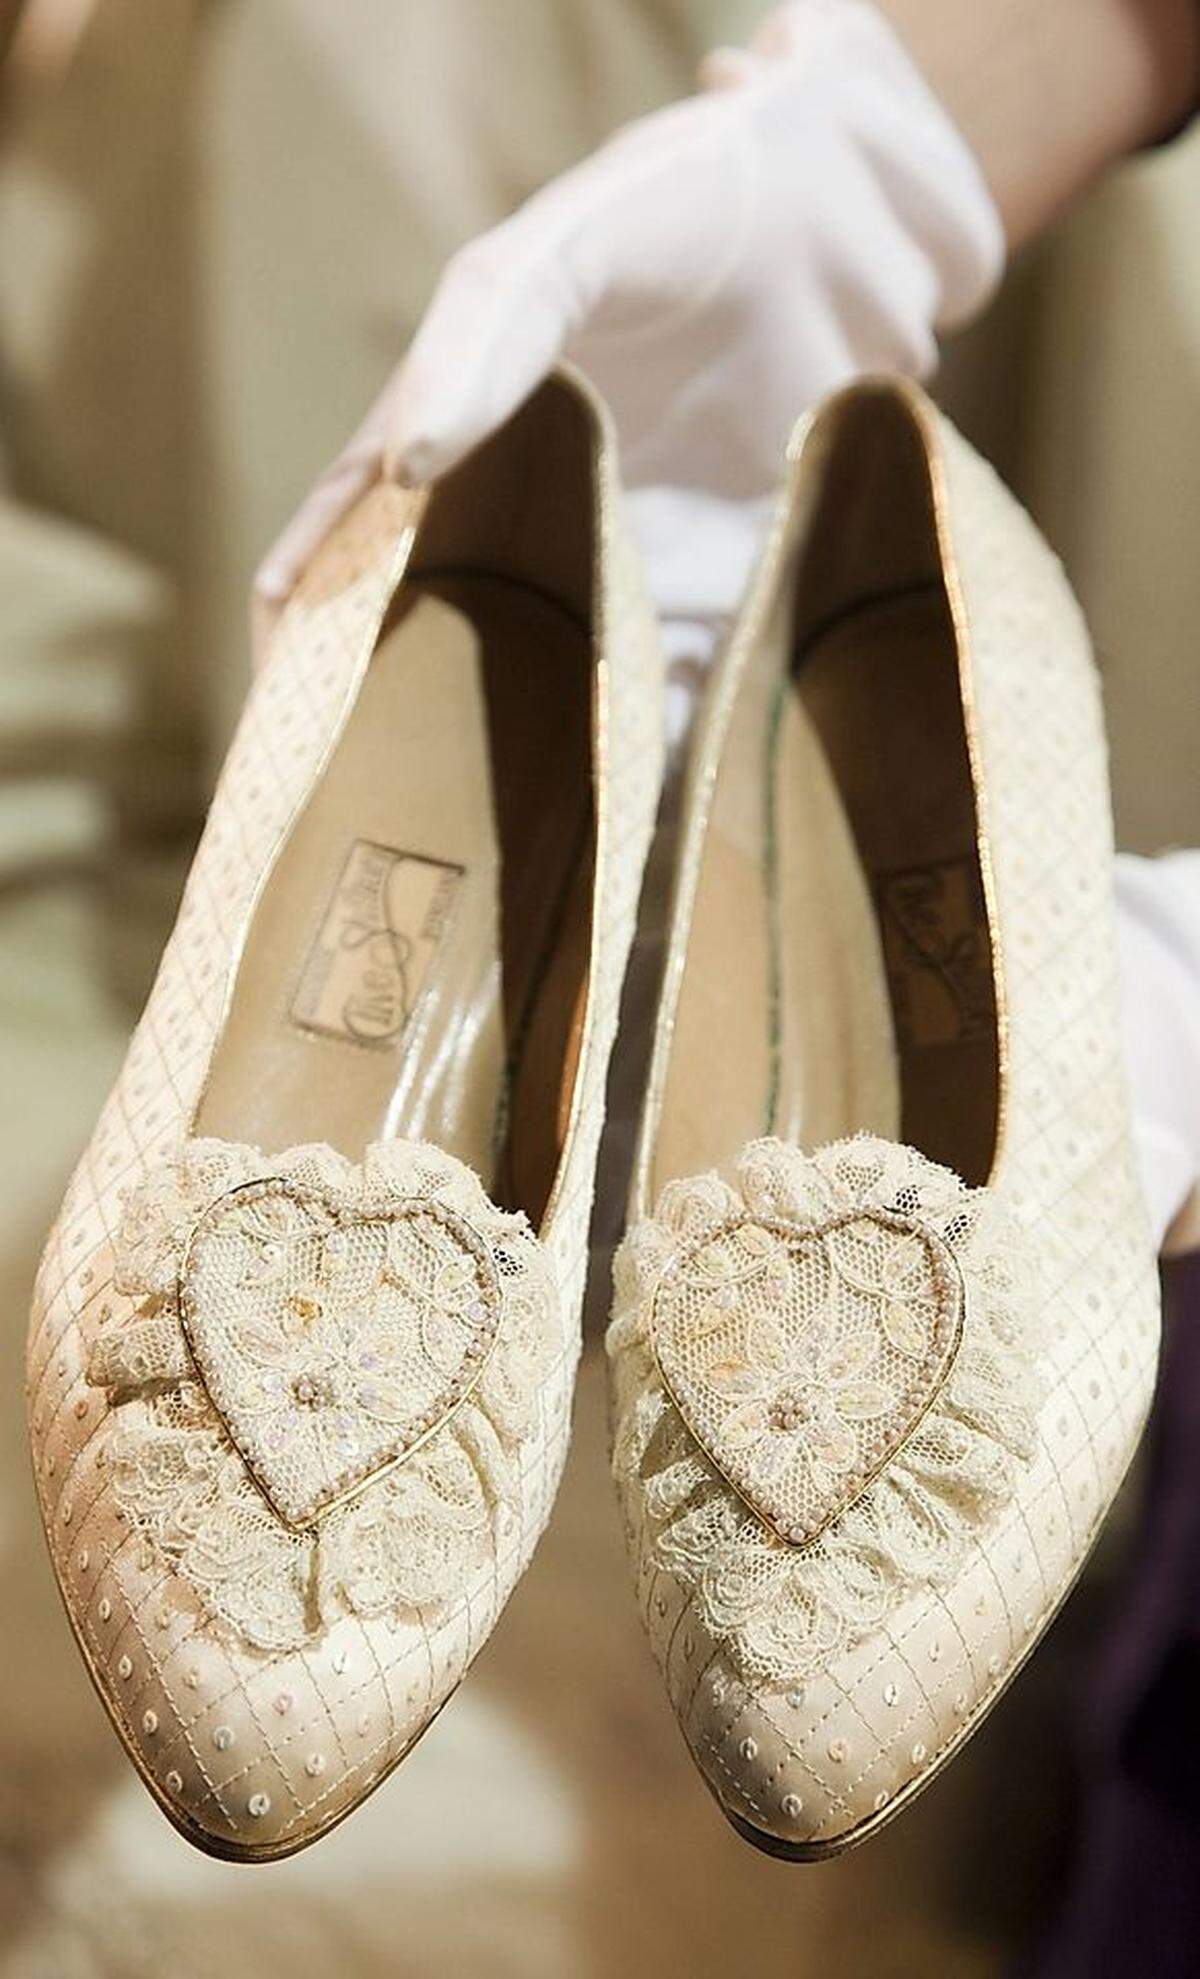 Selbst bei der Hochzeit trug Lady Diana flache Schuhe, um Charles nicht zu überthronen - ein Fan hoher Schuhe wurde die knapp 1,80 Meter Große ohnehin nie.